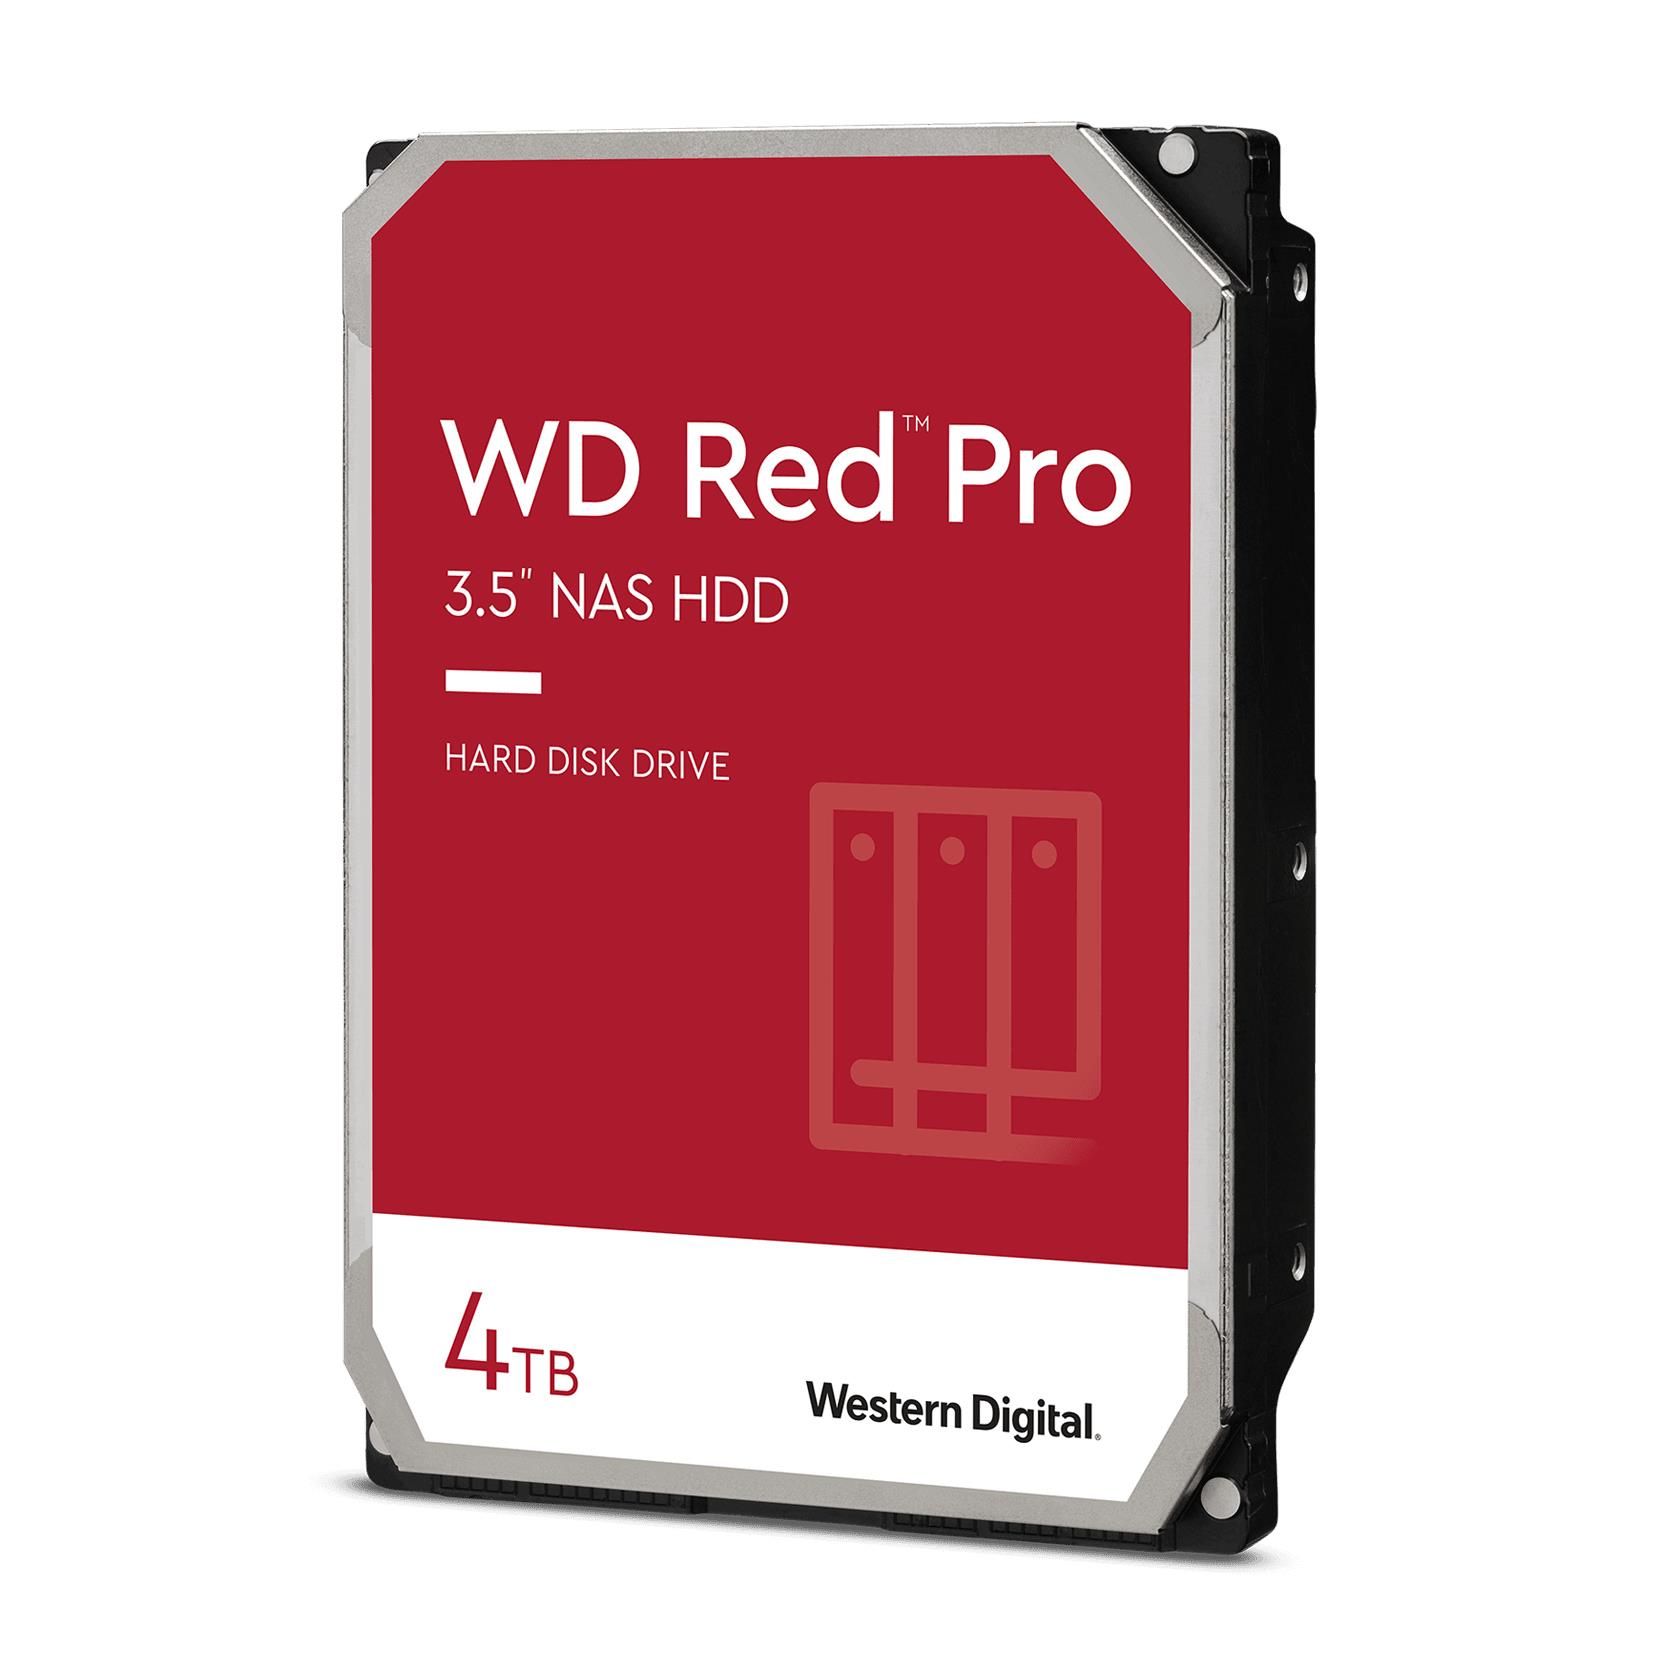 [ComeNuovo] WD Red Pro